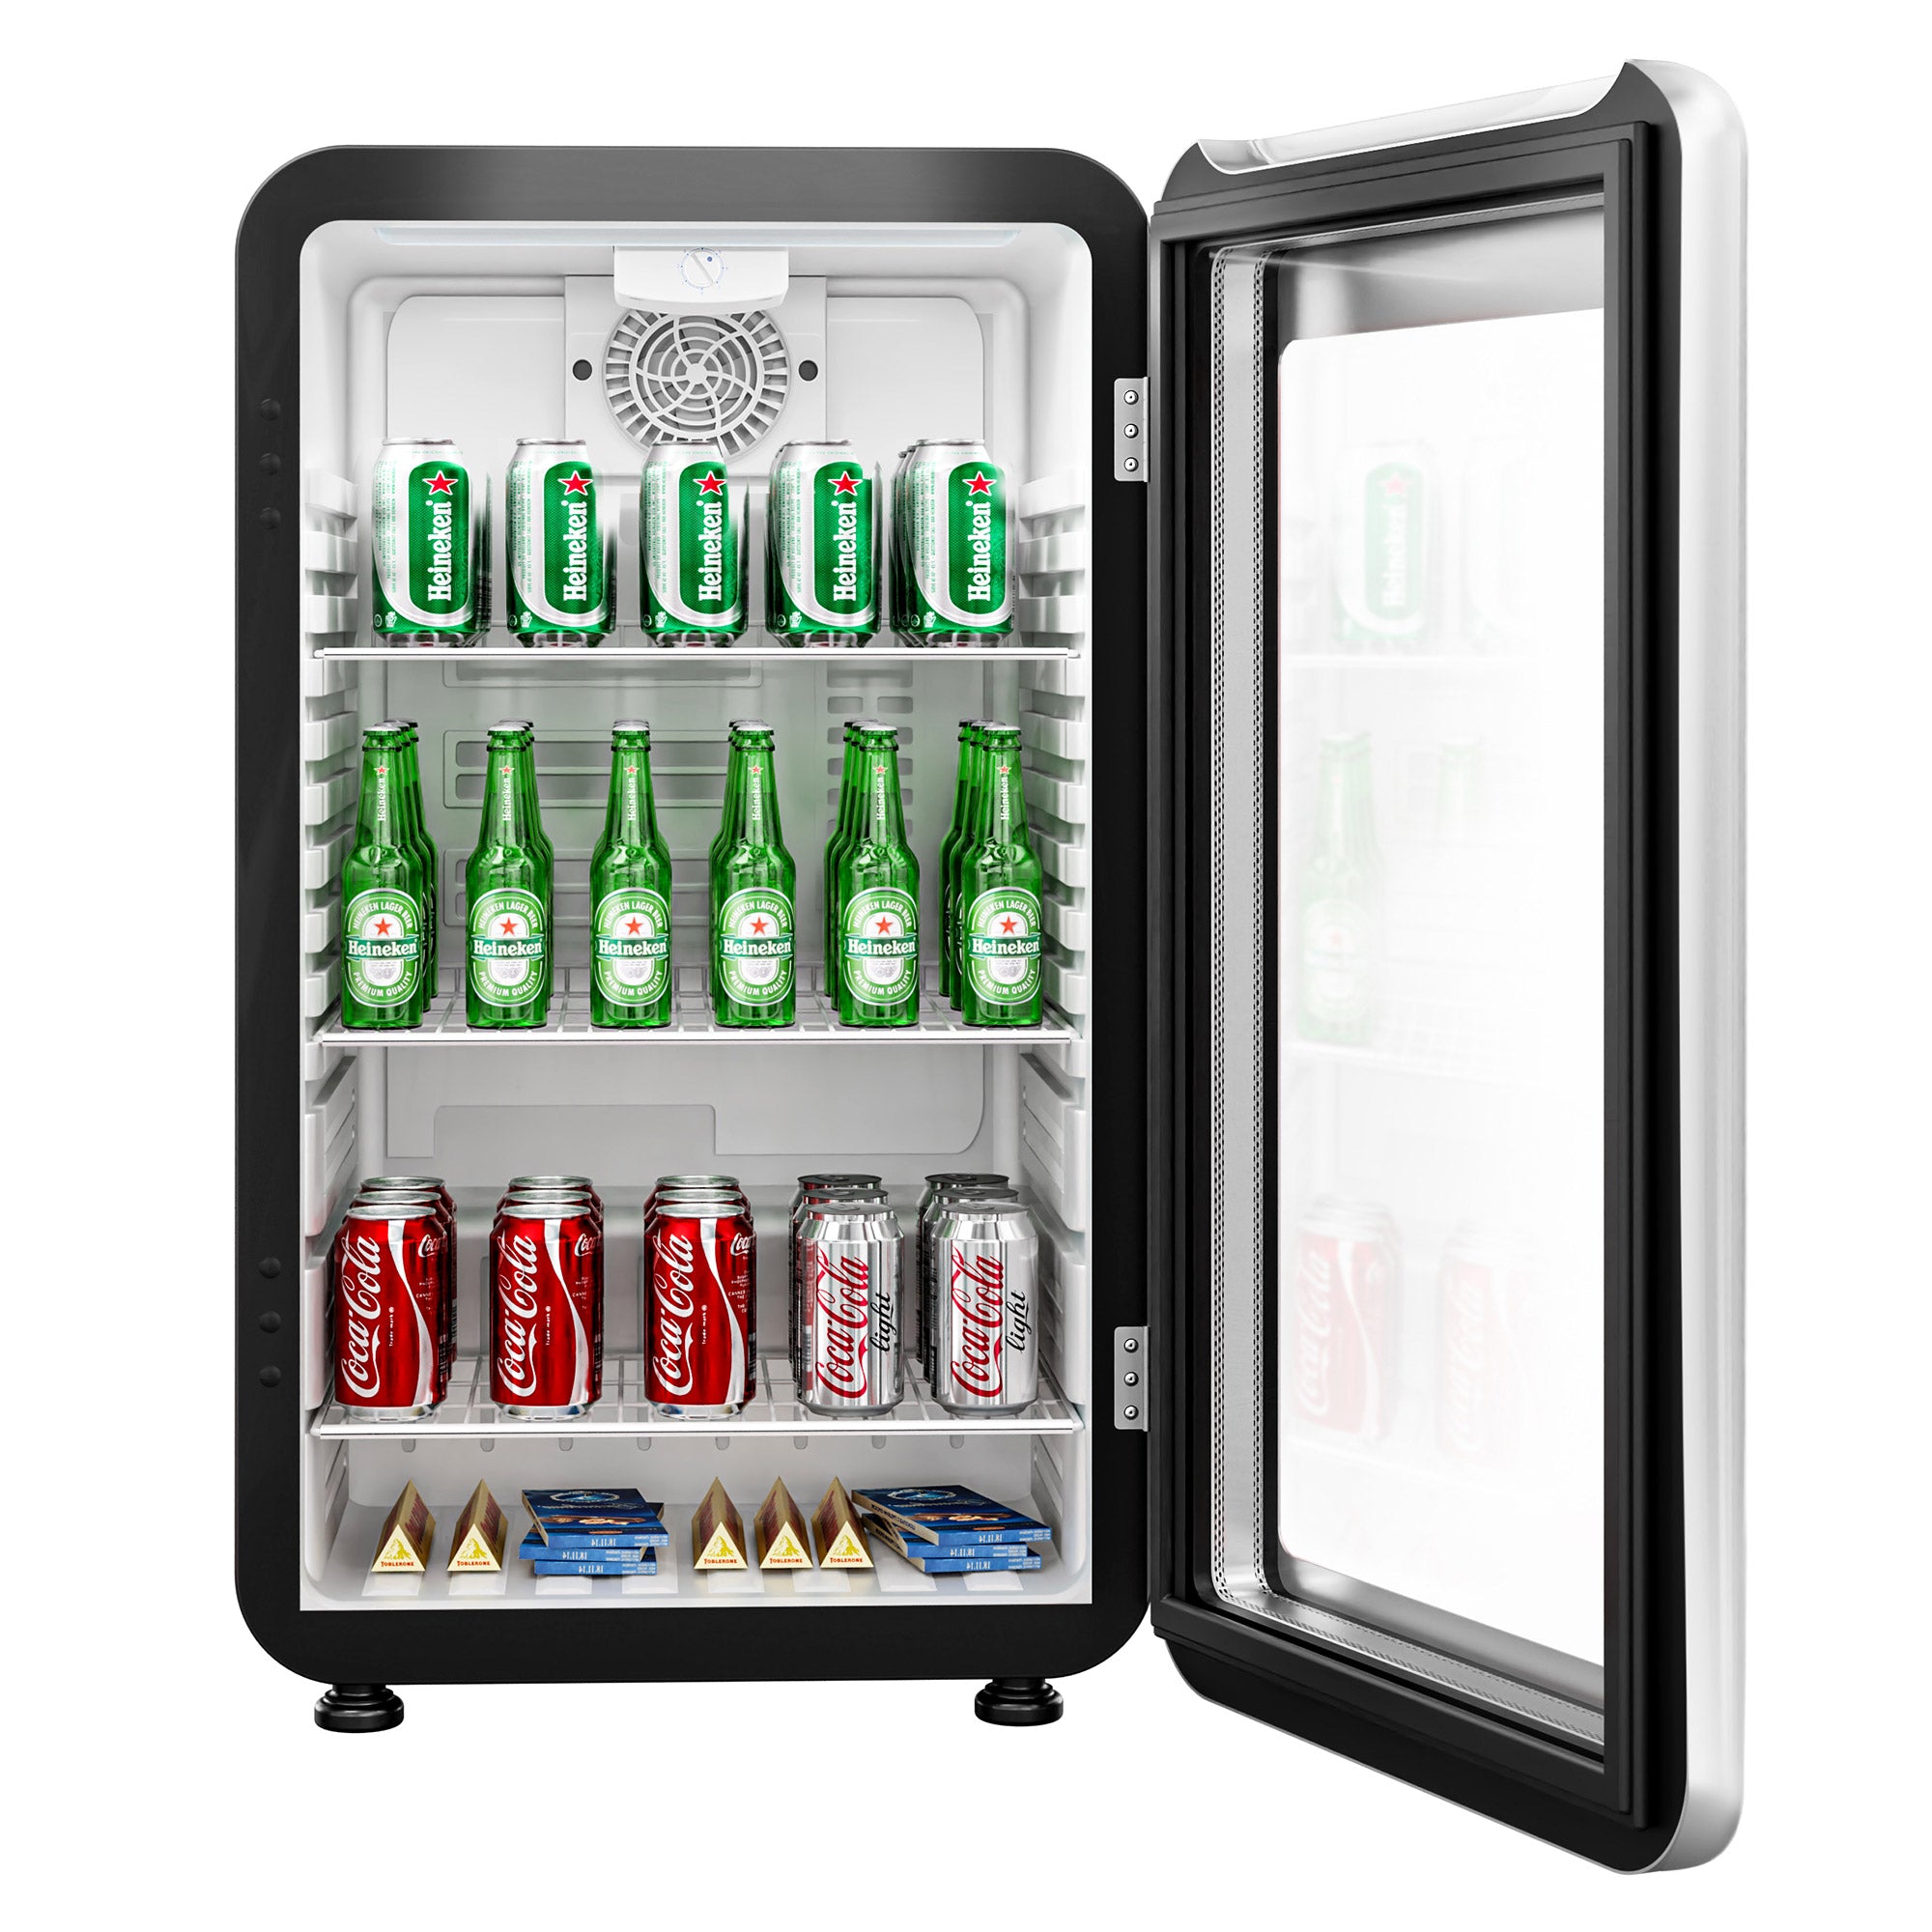 Mini kjøleskap - 113 Liter - med 1 glassdør - Svart/Sølv